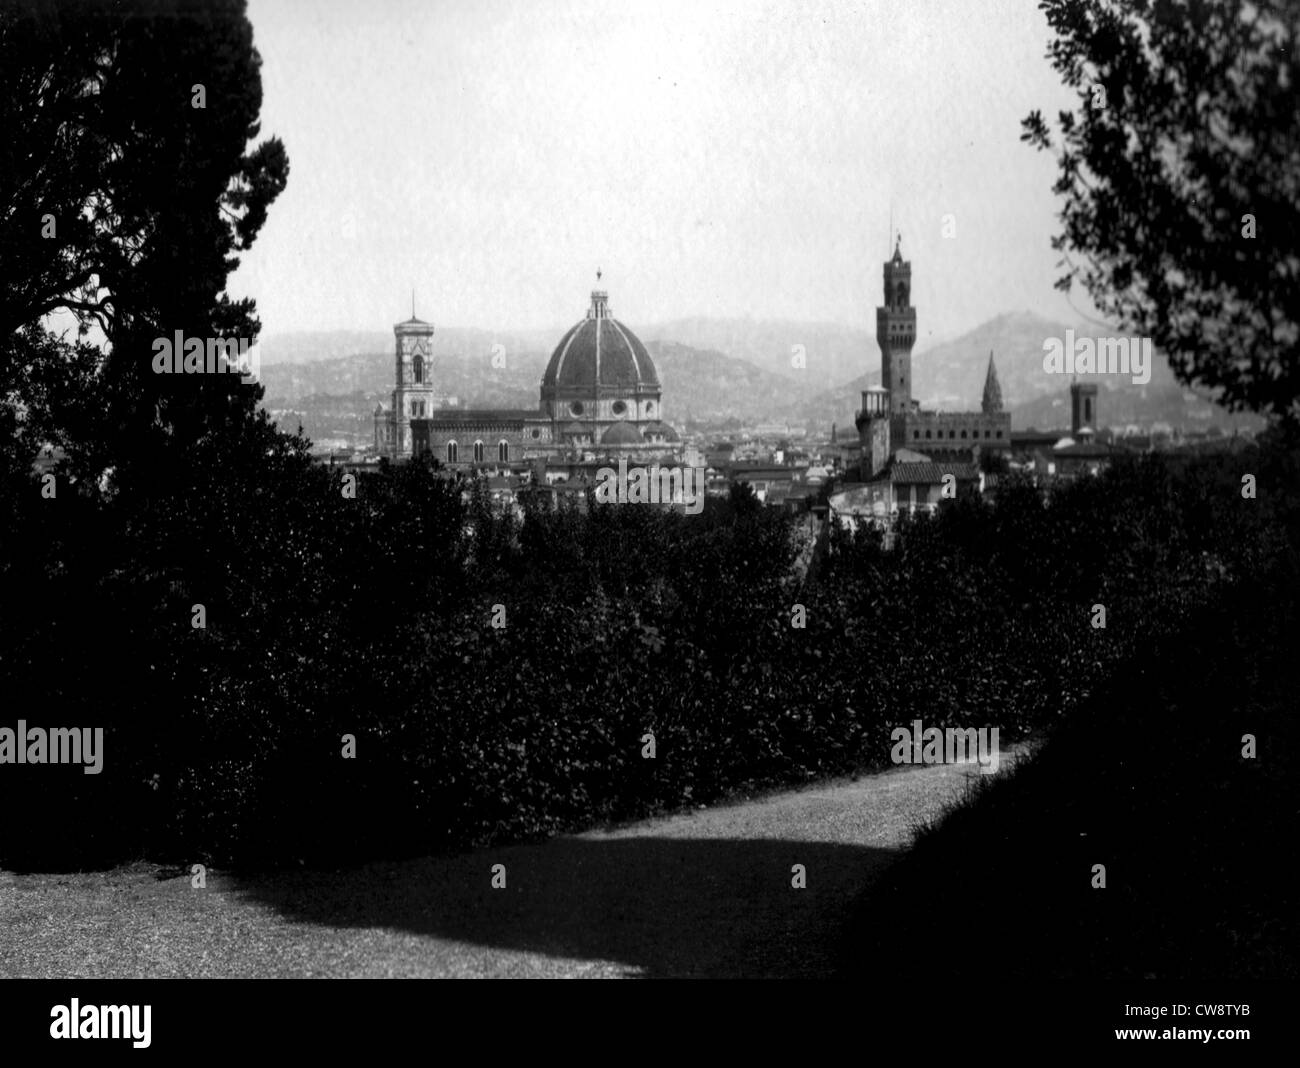 Florencia : Panorama City vista desde los jardines Boboli Foto de stock